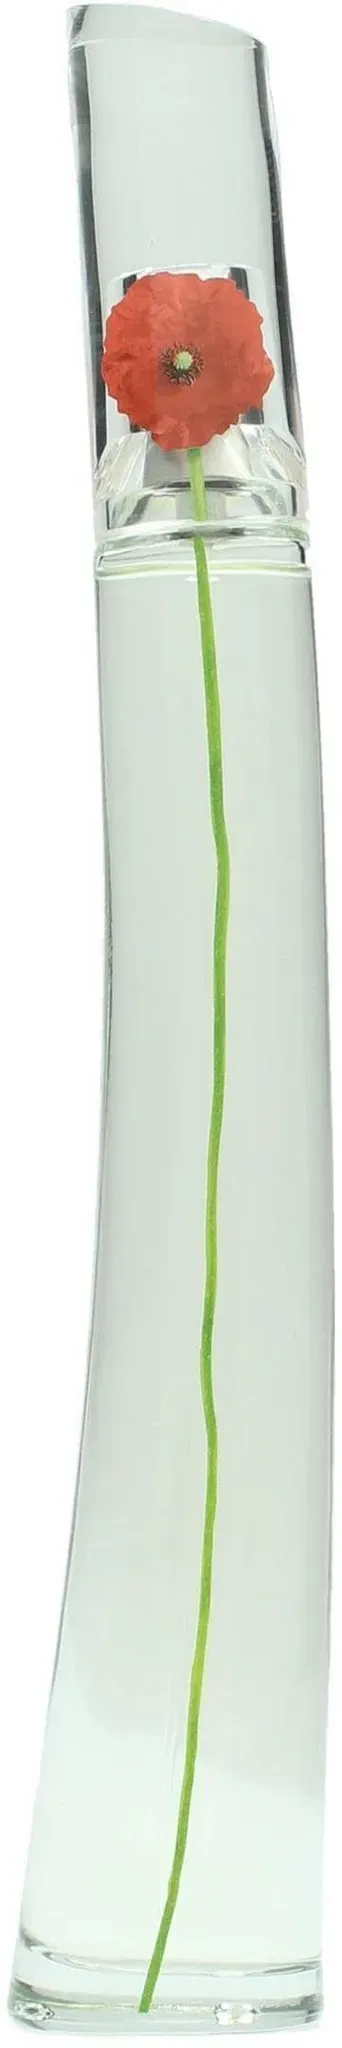 Eau de Parfum KENZO "Kenzo Flower" Parfüms Gr. 100 ml, farblos (transparent) Damen Eau de Parfum